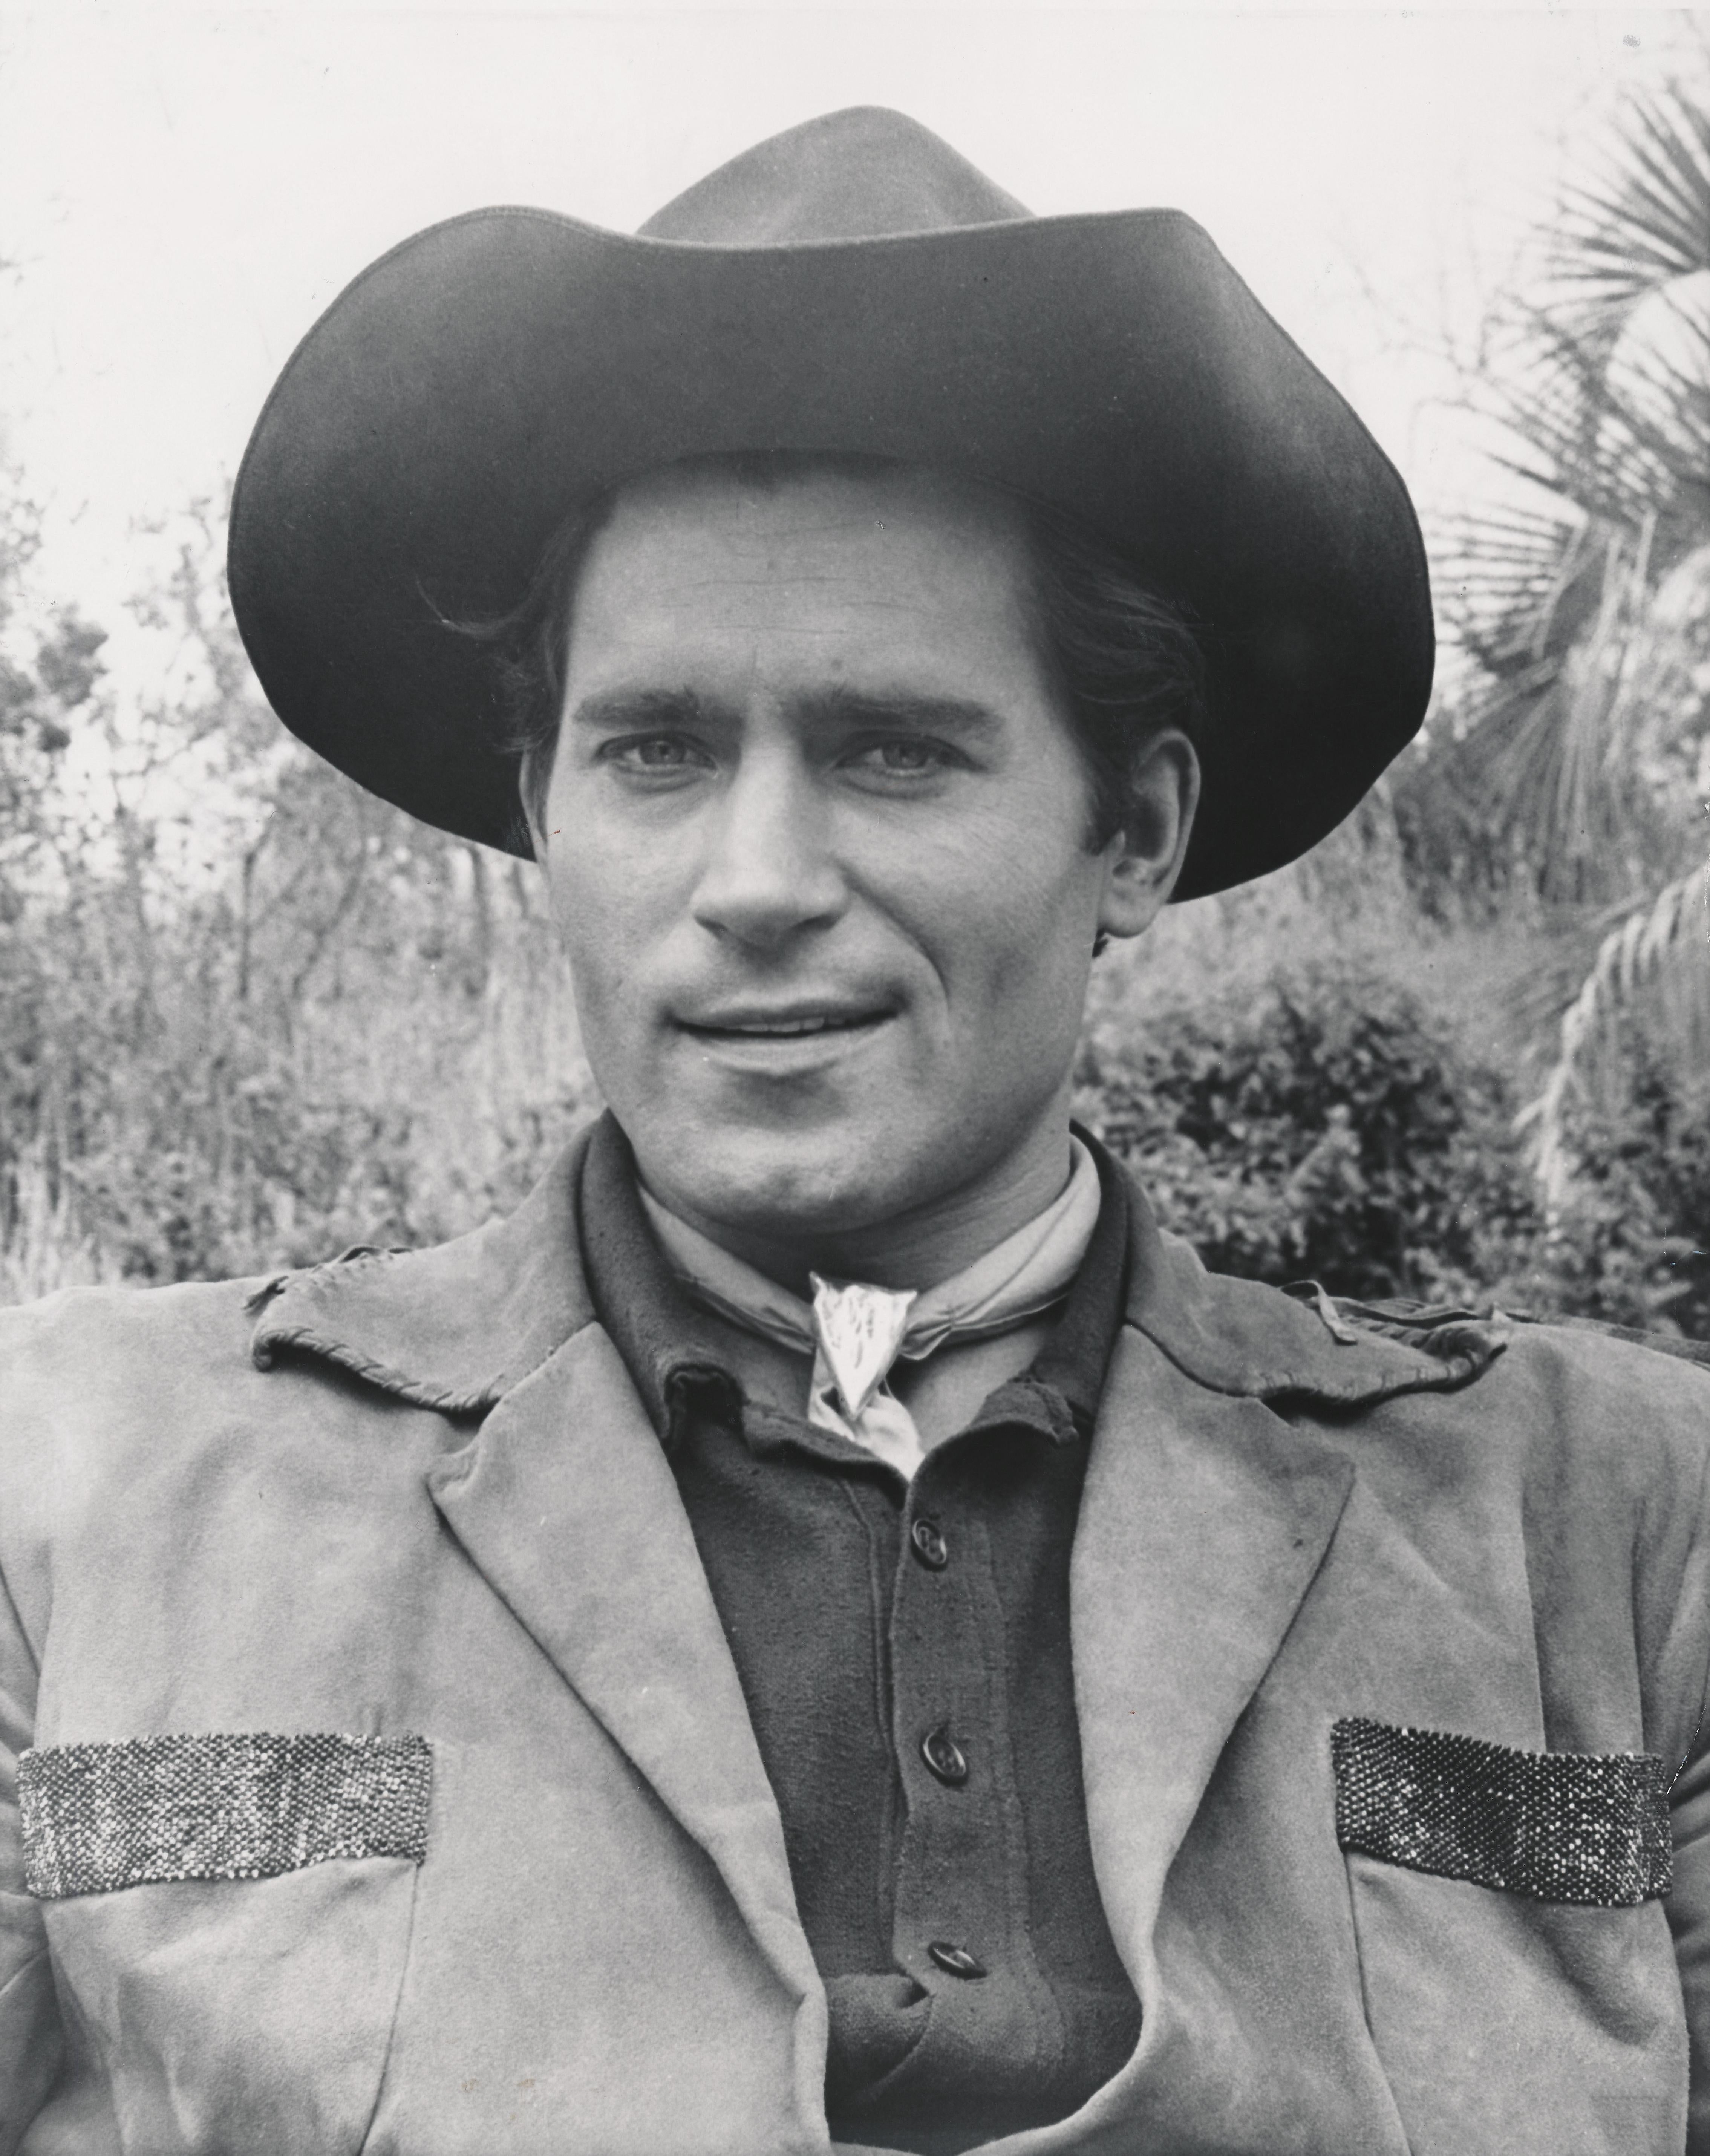 Unknown Portrait Photograph - Clint Walker Smiling in Cowboy Hat Fine Art Print